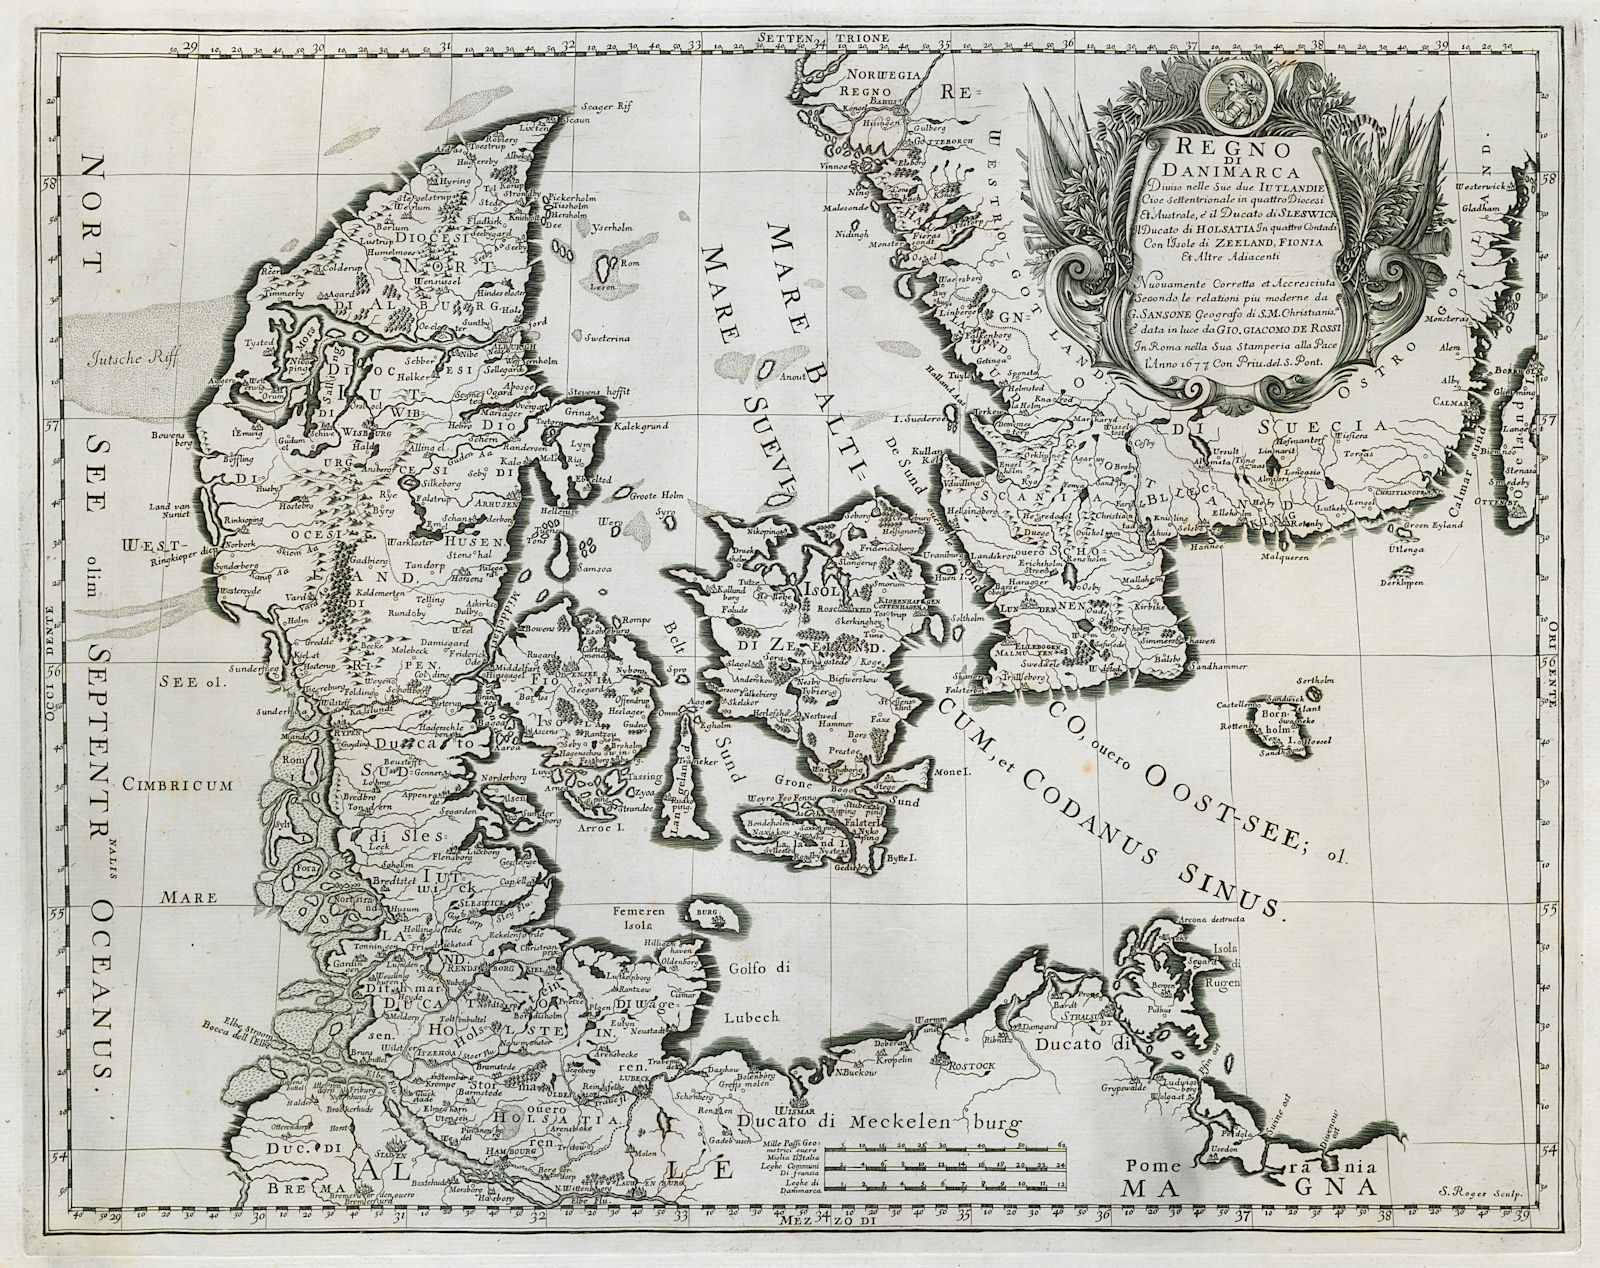 Regno di Danimarca. The Kingdom of Denmark. DE ROSSI 1677 old antique map